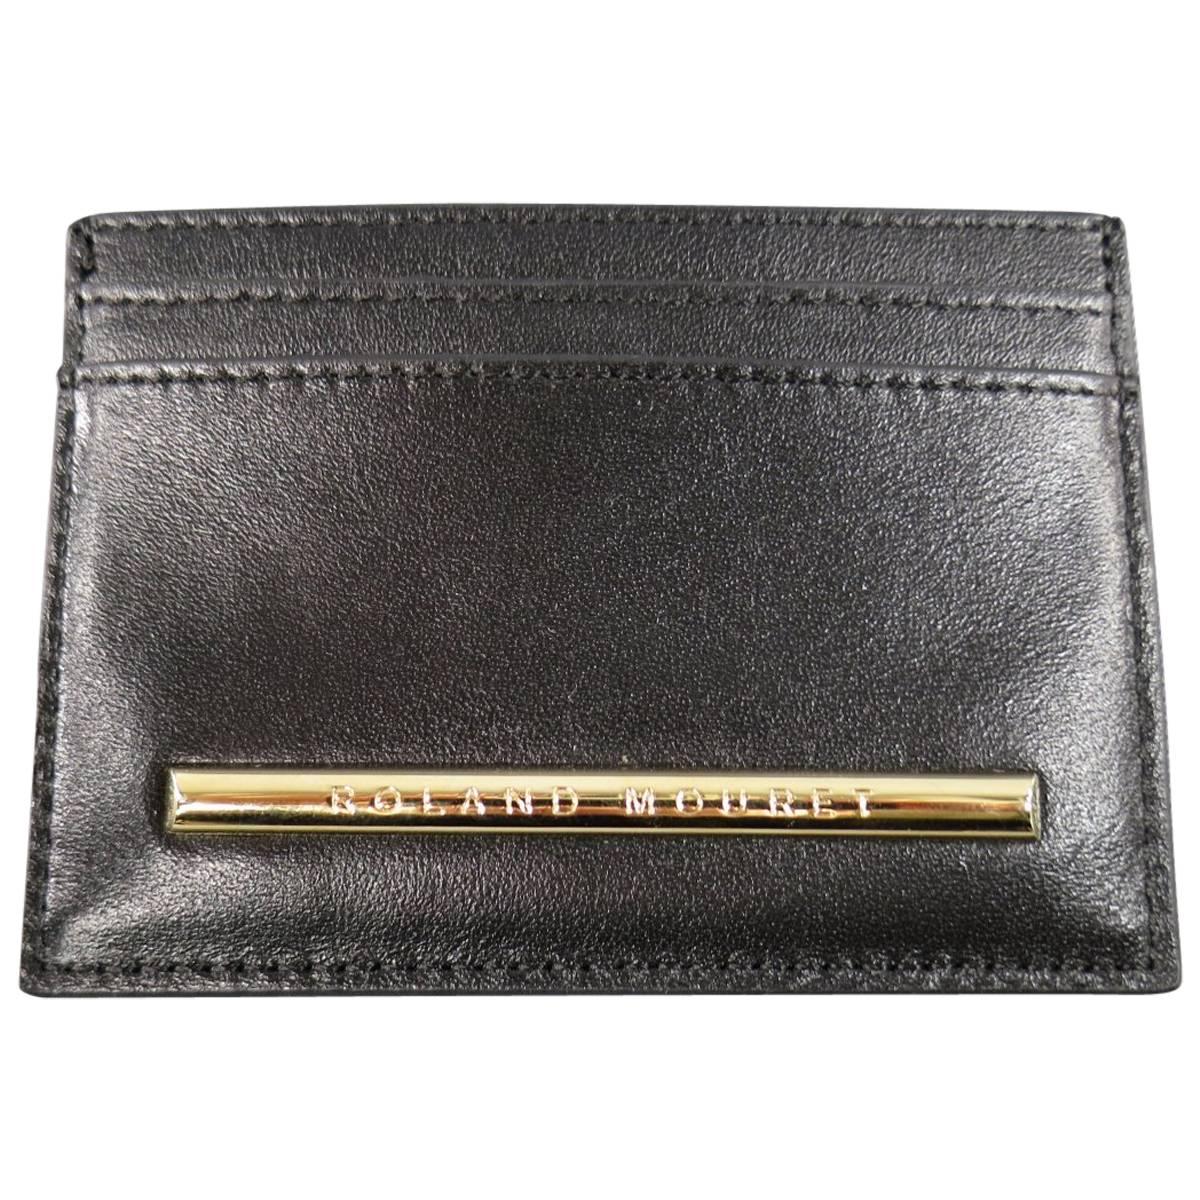 New ROLAND MOURET Card Case - Black Leather Gold Engraved Metal 